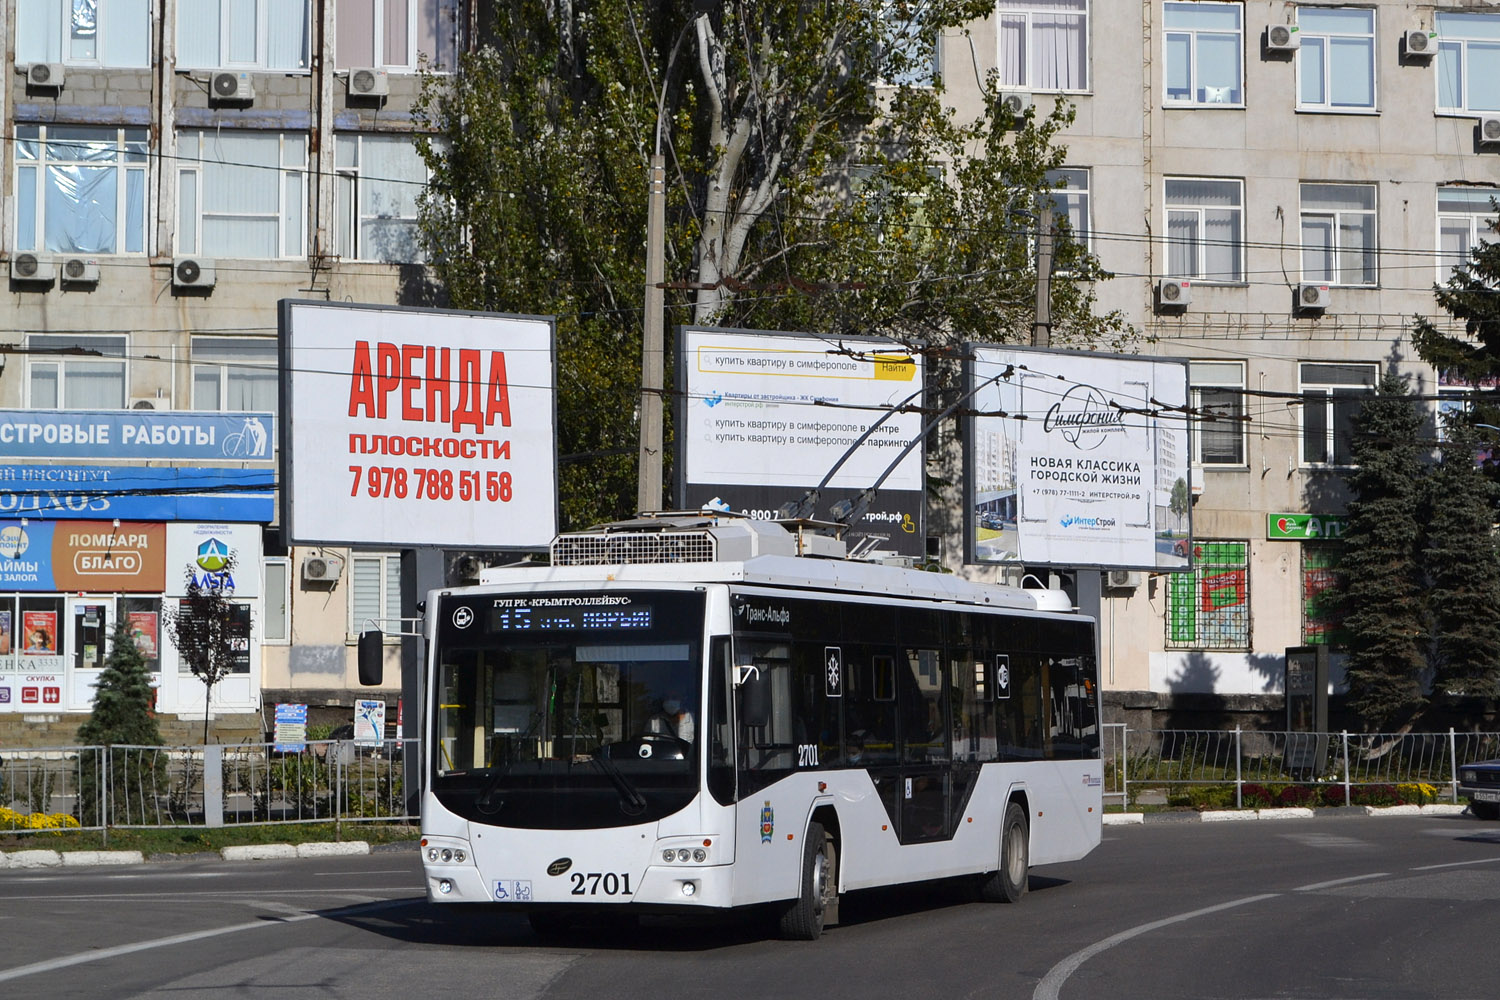 Крымский троллейбус, ВМЗ-5298.01 «Авангард» № 2701